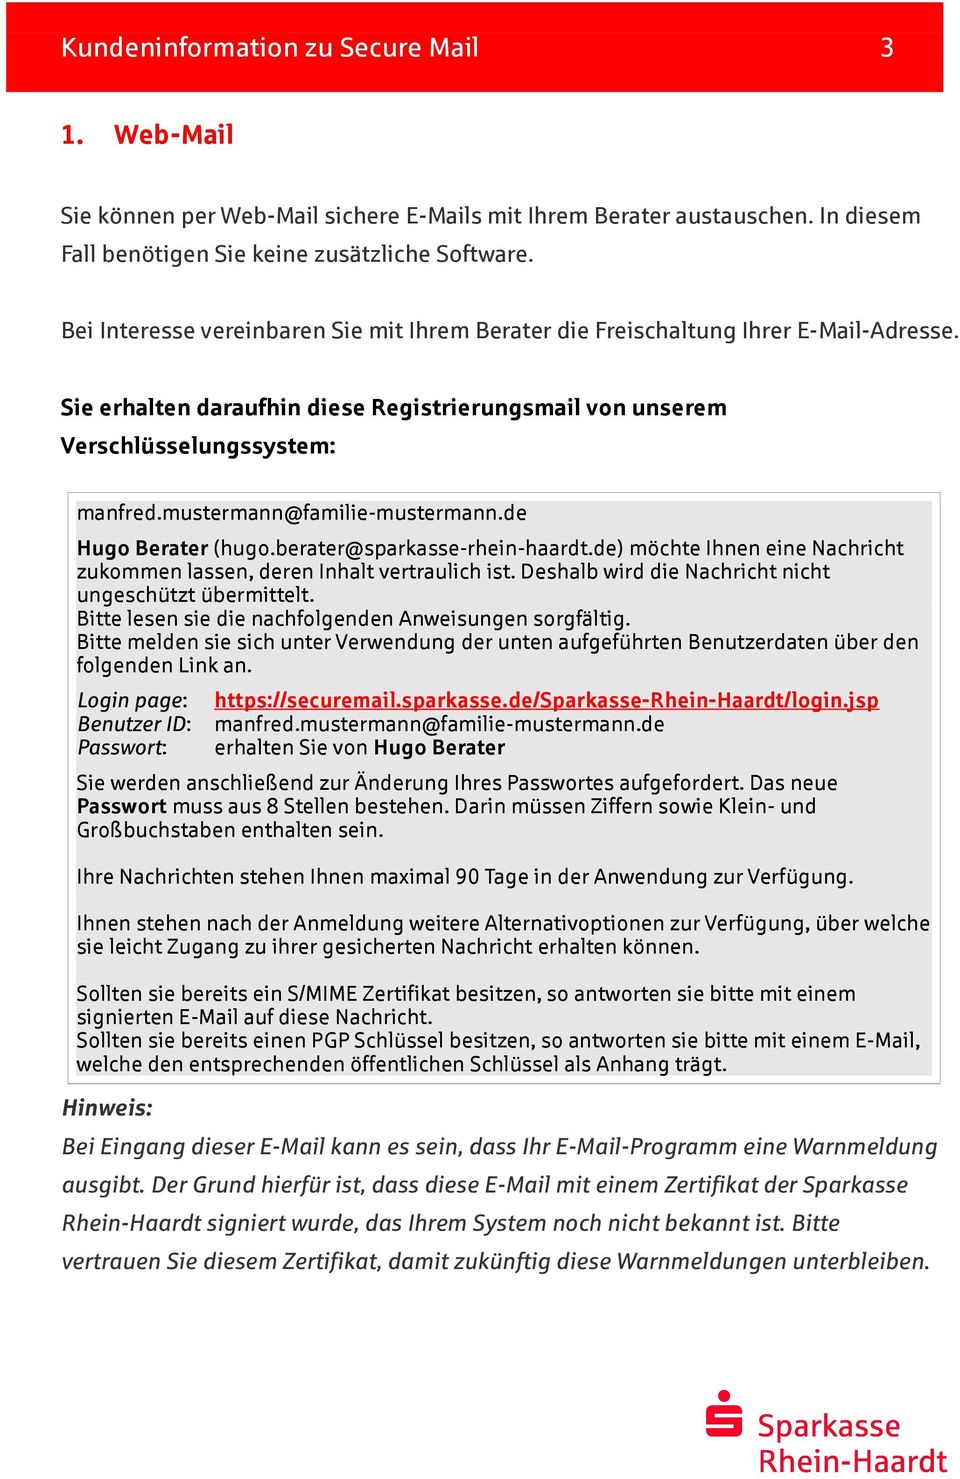 berater@sparkasse-rhein-haardt.de) möchte Ihnen eine Nachricht zukommen lassen, deren Inhalt vertraulich ist. Deshalb wird die Nachricht nicht ungeschützt übermittelt.